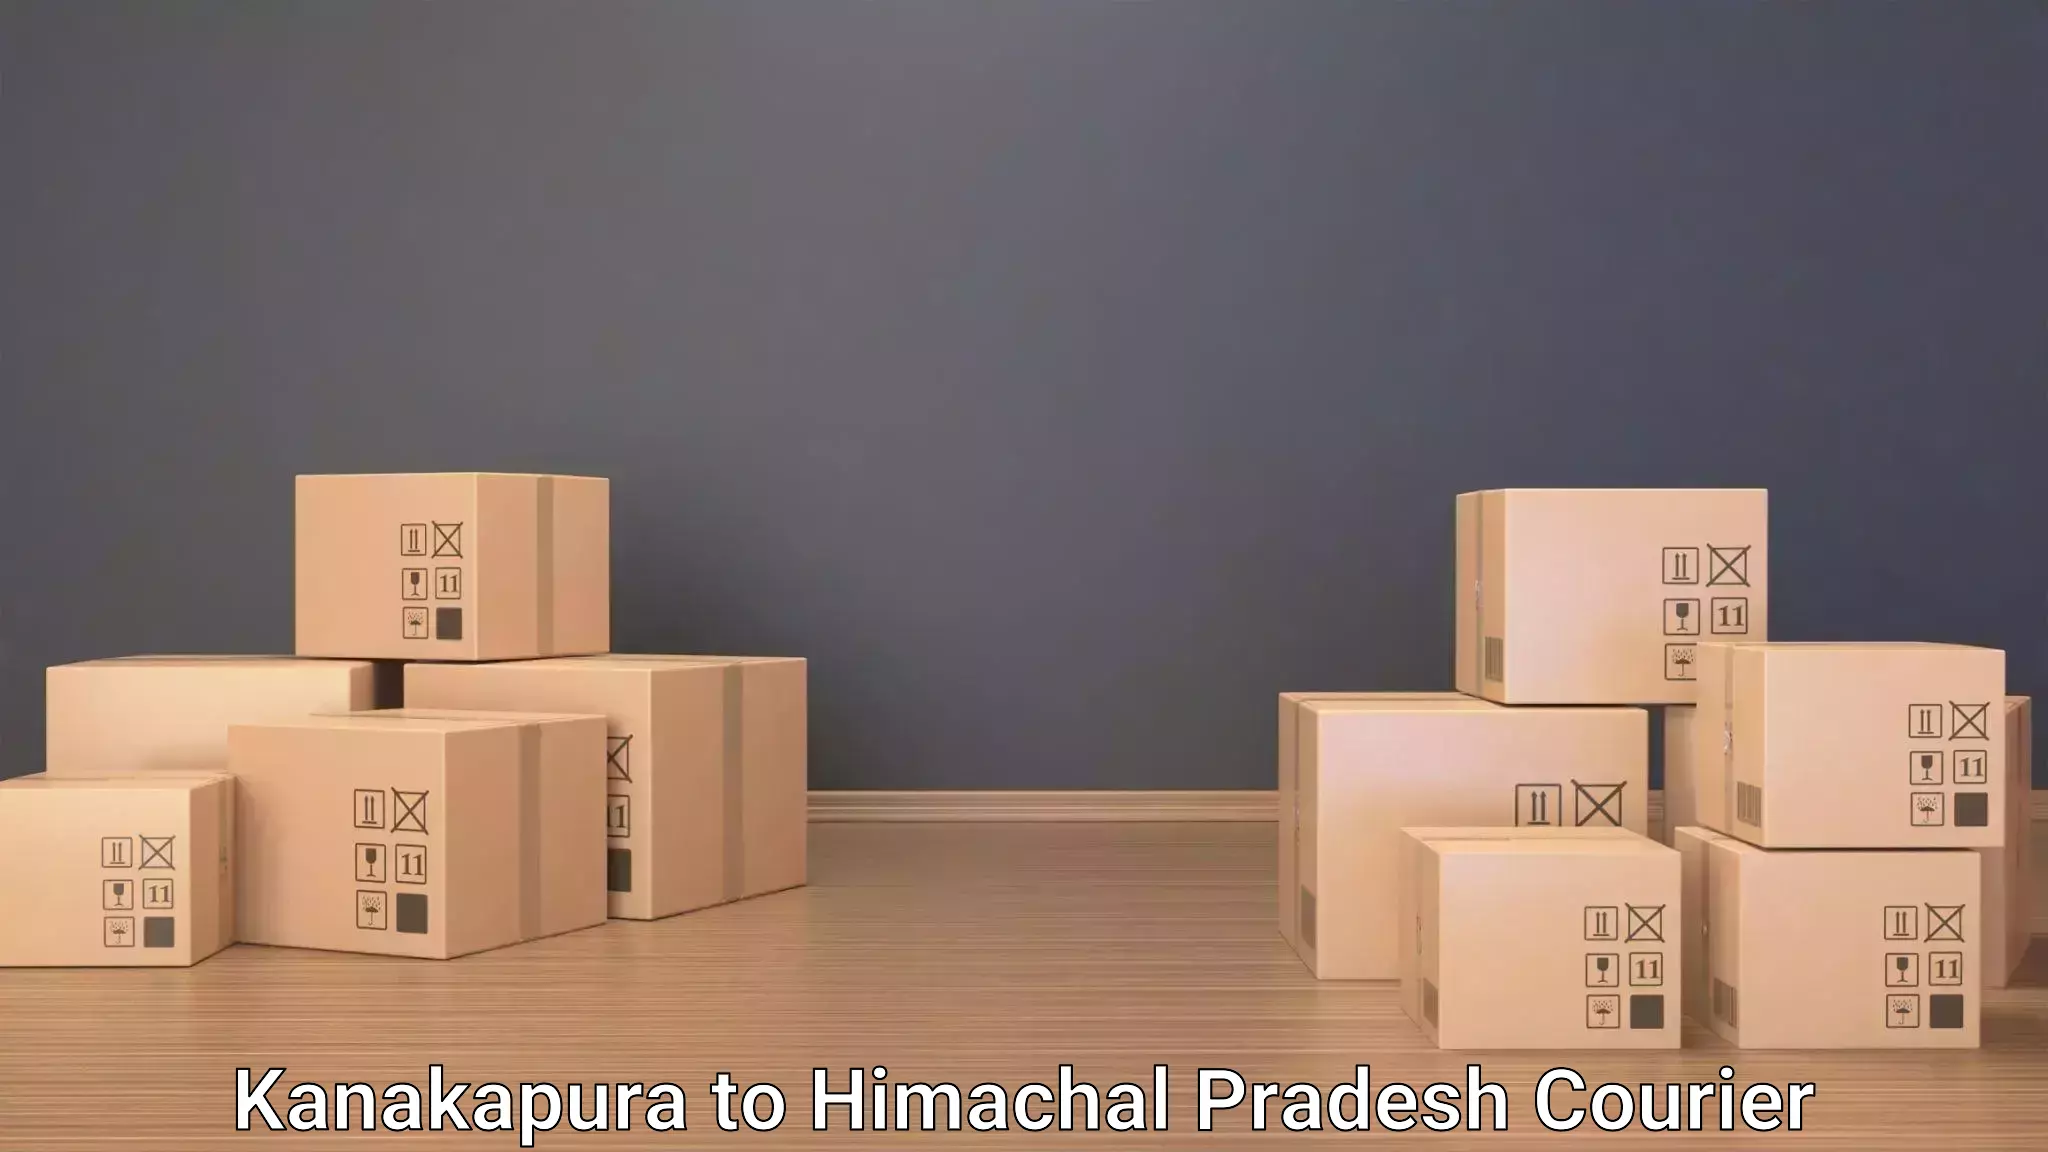 Luggage delivery system Kanakapura to Surajpur Jhikla